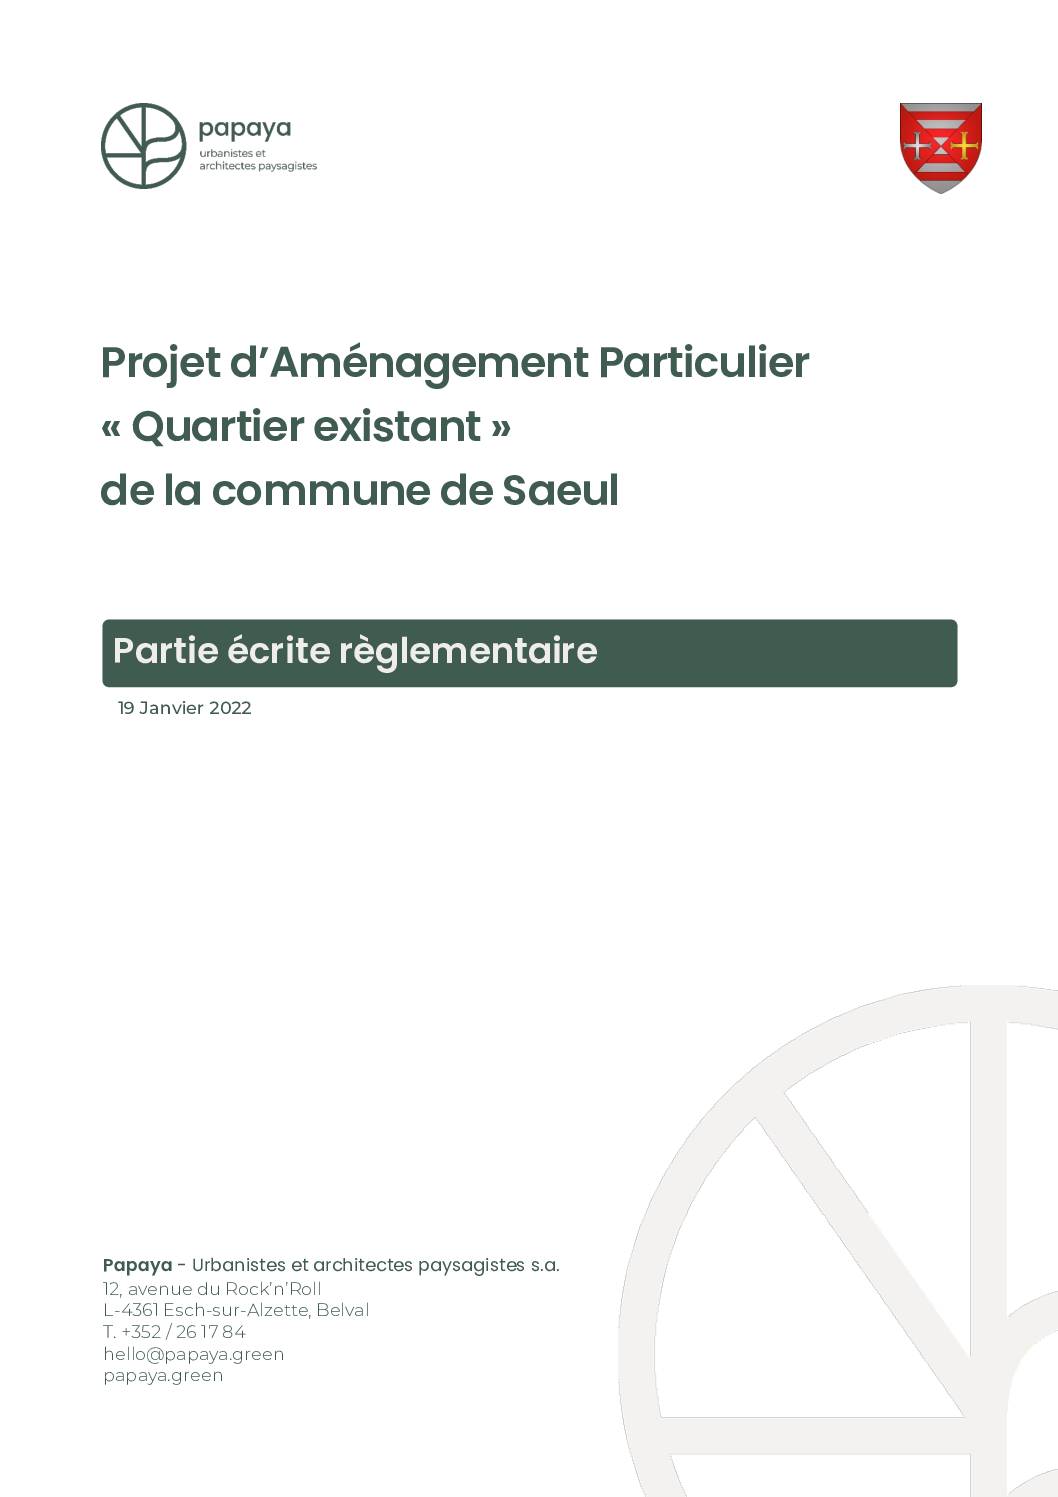 Projet d’Aménagement Particulier « Quartier existant » (PAP QE) de la commune de Saeul - Partie écrite règlementaire